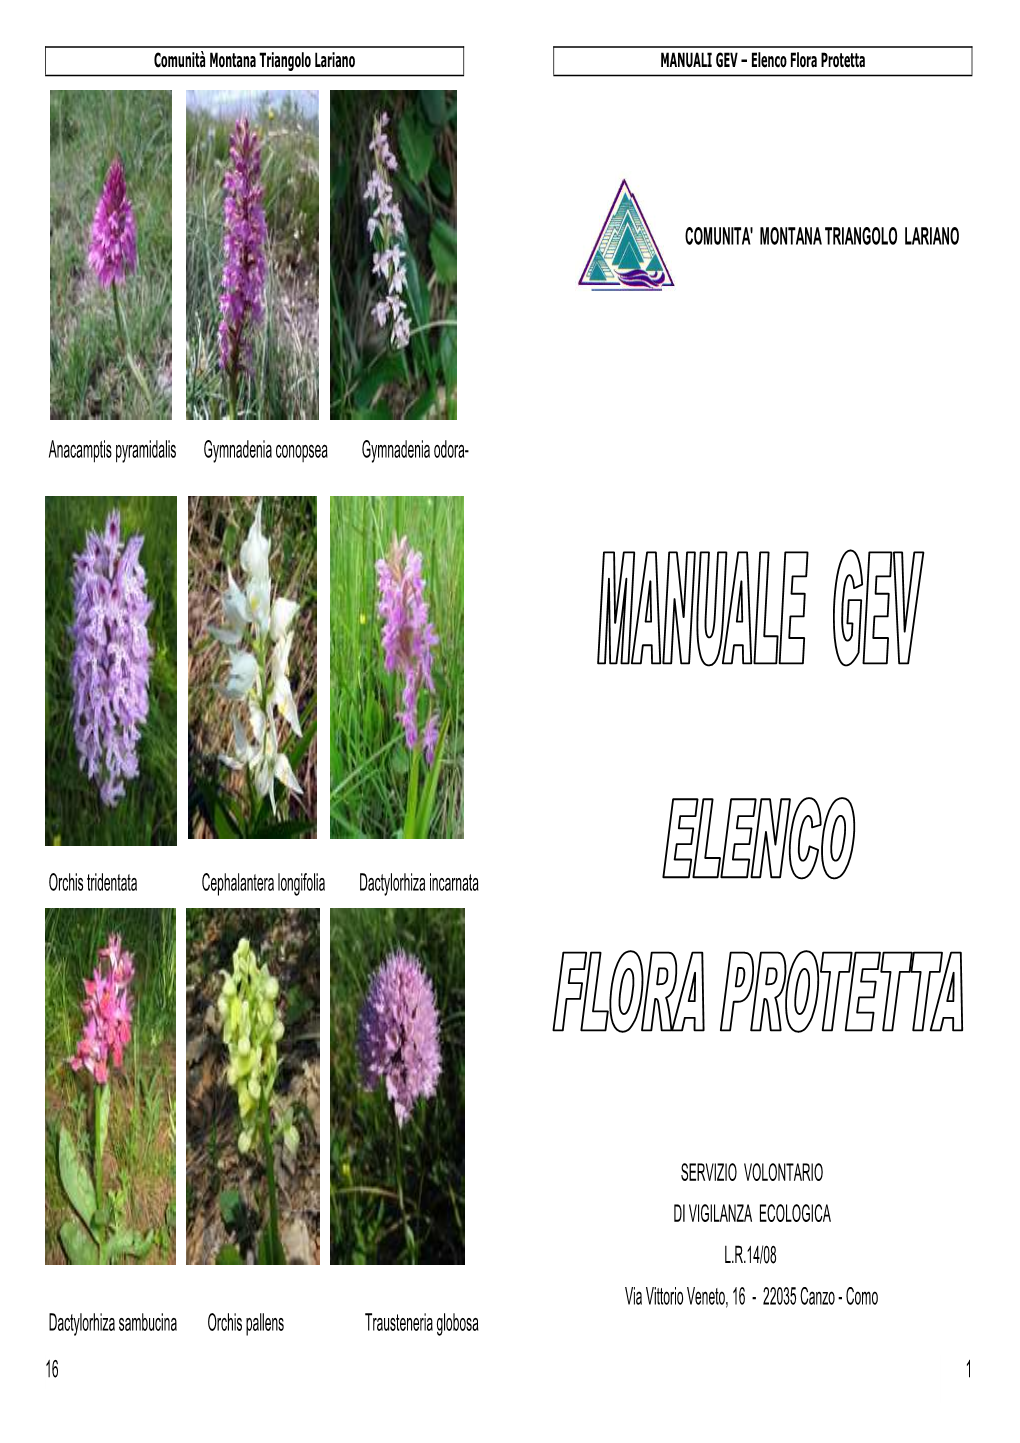 Elenco Flora Protetta